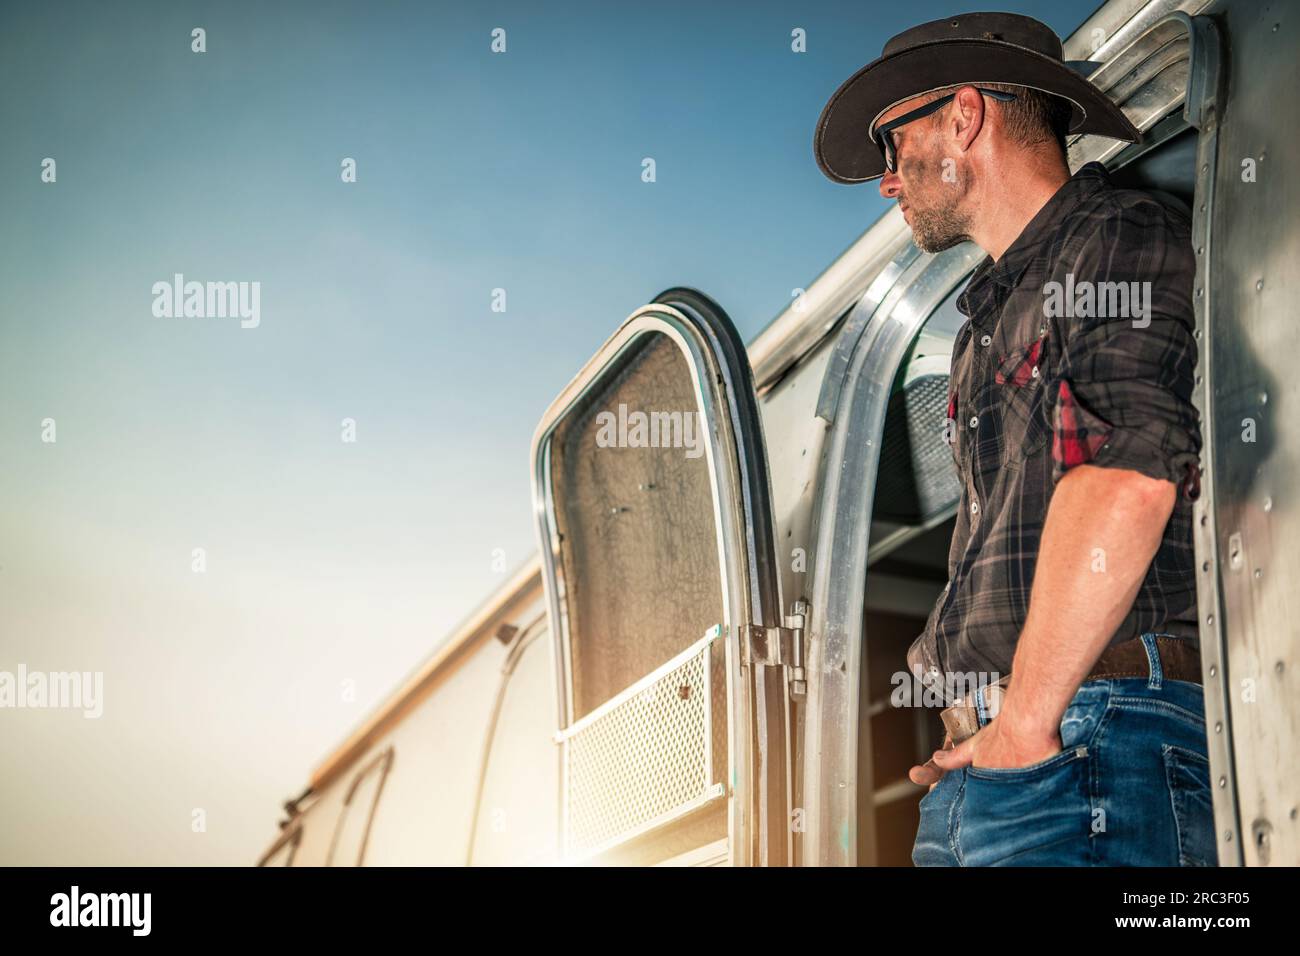 Entspannter weißer Cowboy in seinem 40s und seinem Classic Shiny Travel Trailer. Amerikanisches West-Thema. Stockfoto